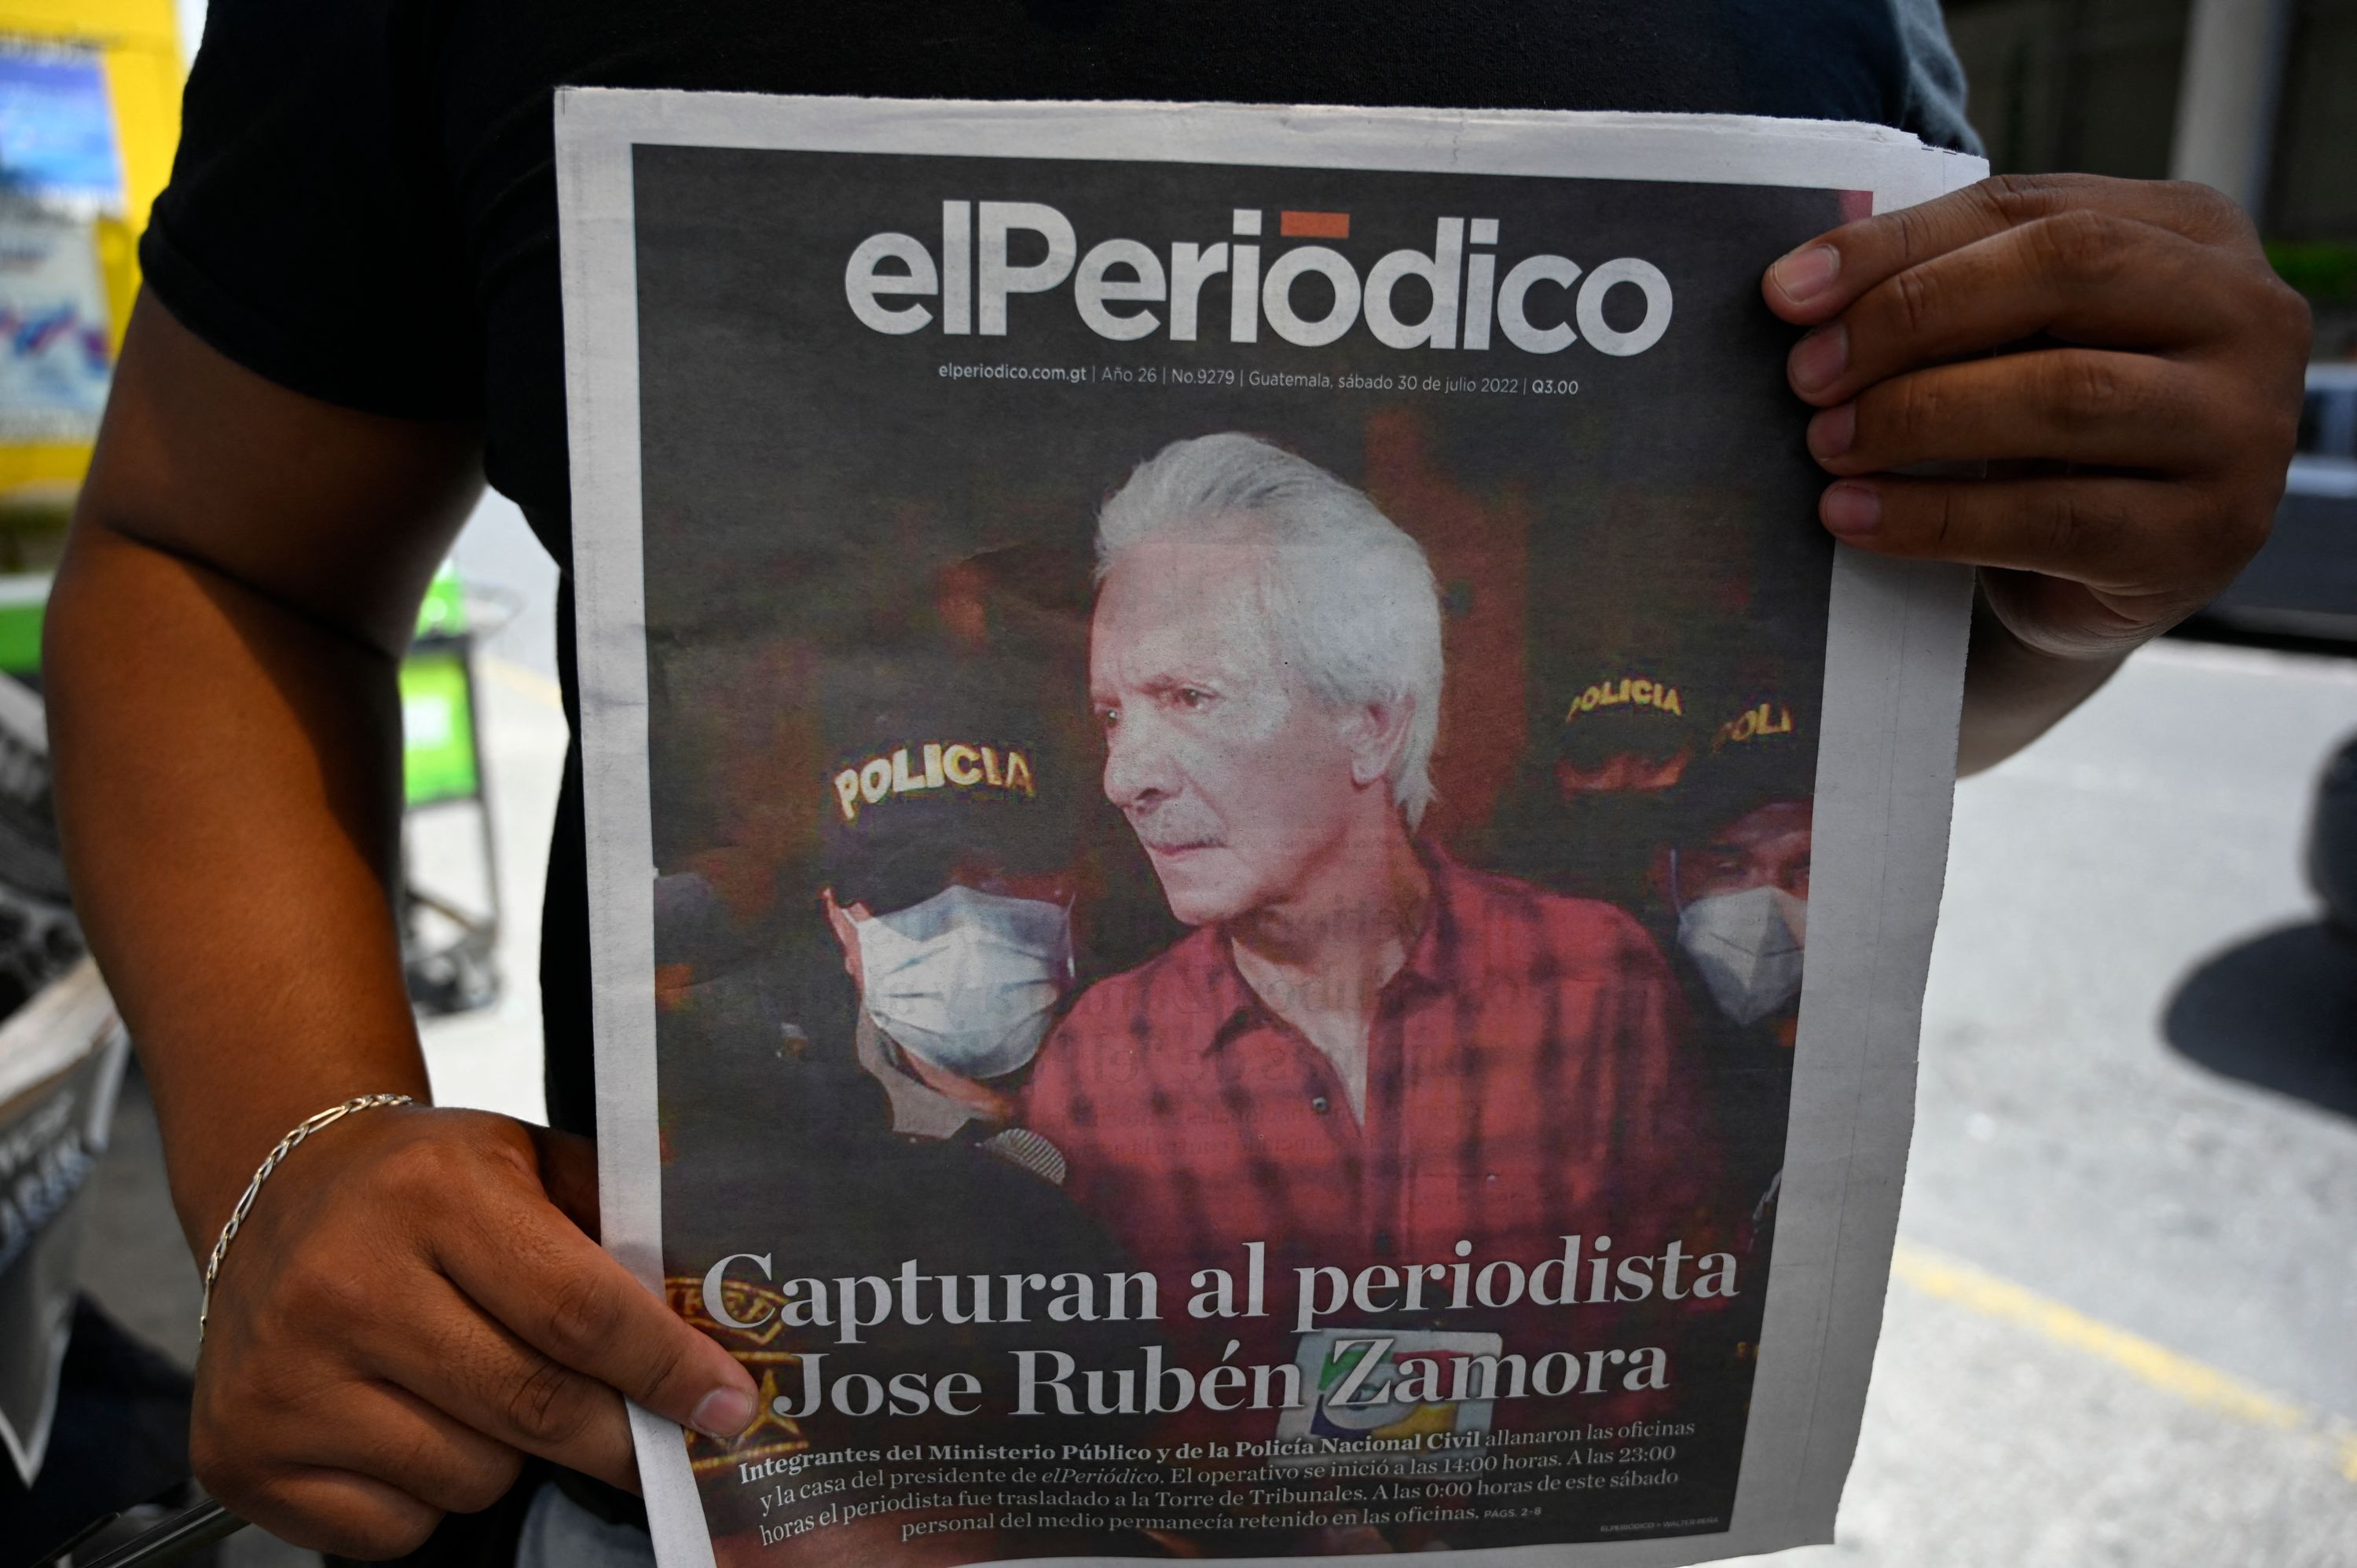 El periodista Jose Rubén Zamora Marroquín, presidente de elPeriódico, está preso bajo los cargos de lavado de dinero. (Foto Prensa Libre: AFP)